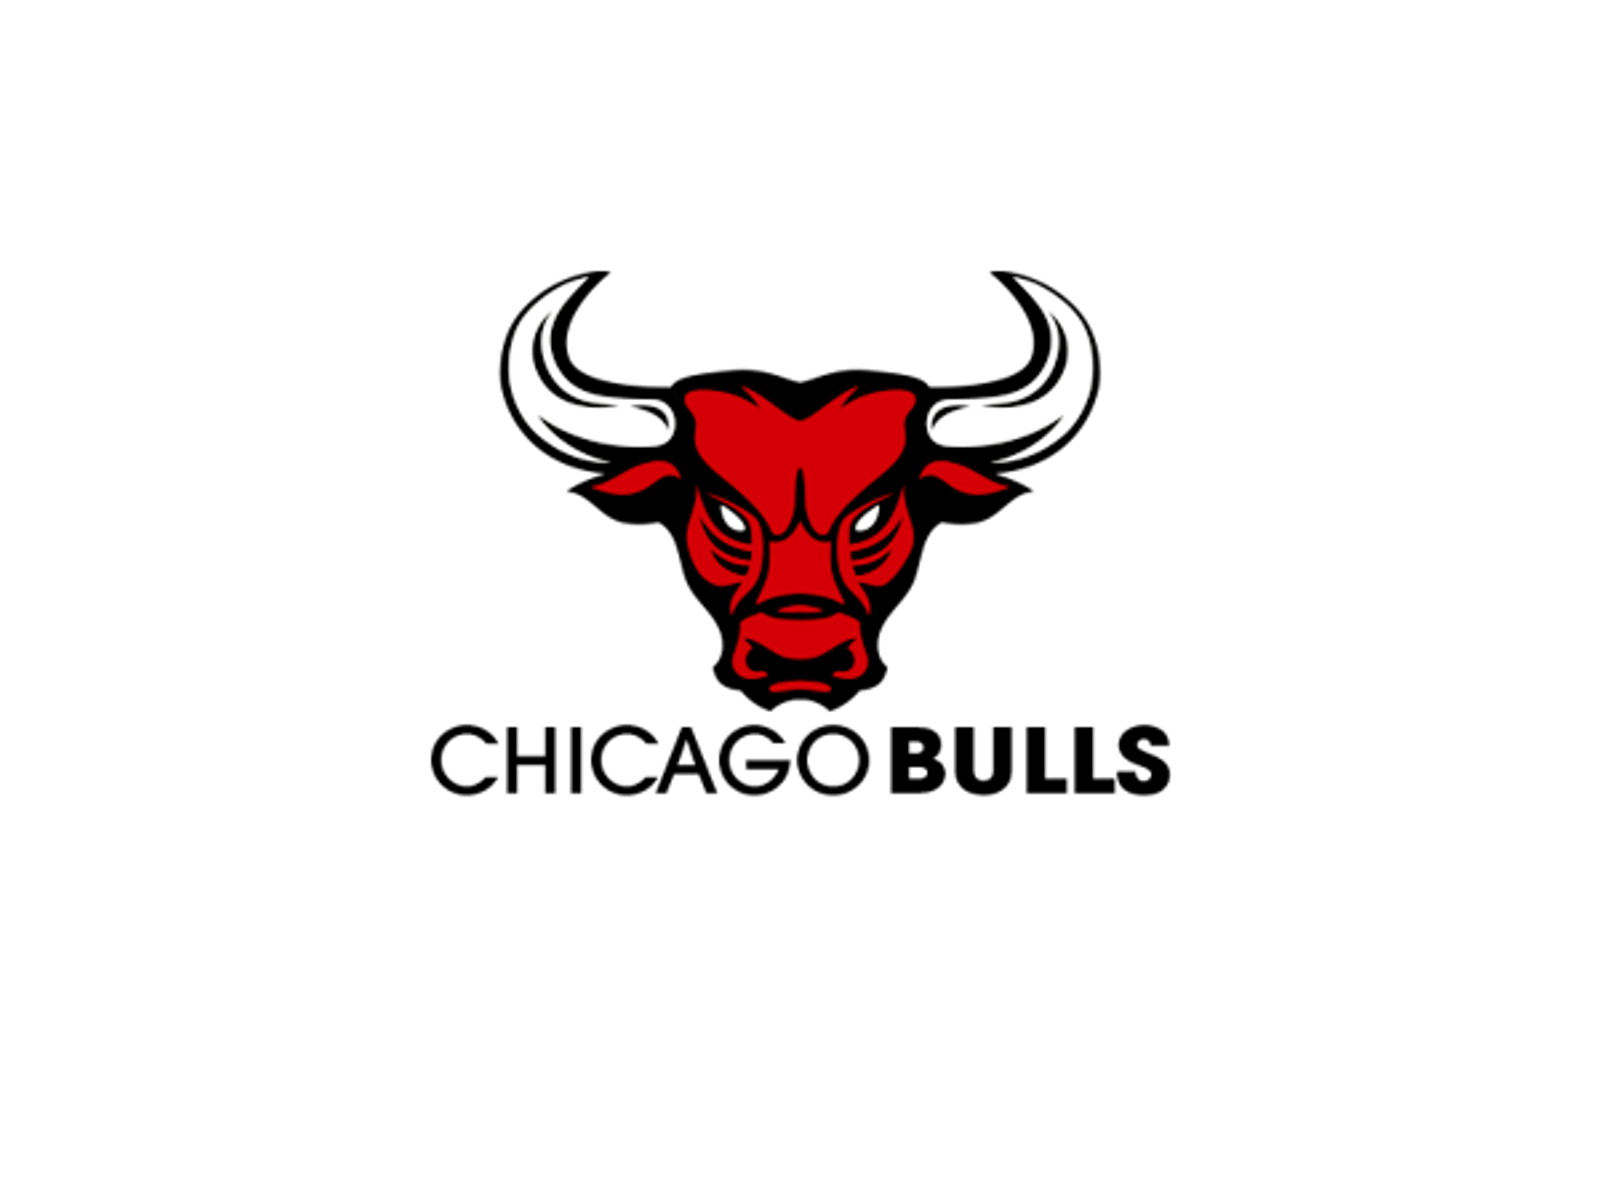 Chicago Bulls Logo Basketball Team 2015 Chicago Bulls Logo